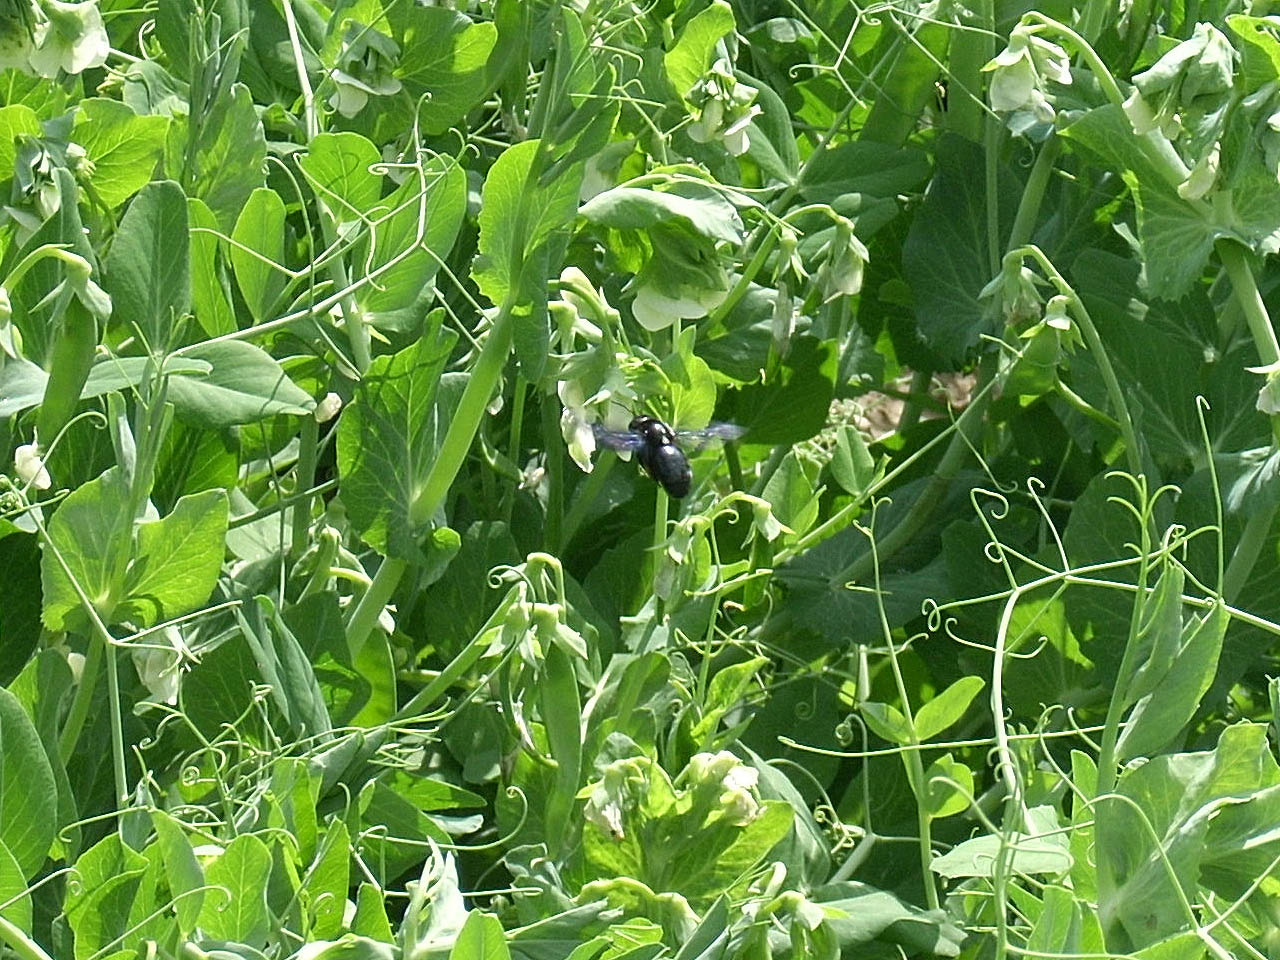 Kék fadongó (Xylocopa violacea L.) a borsóvirágon